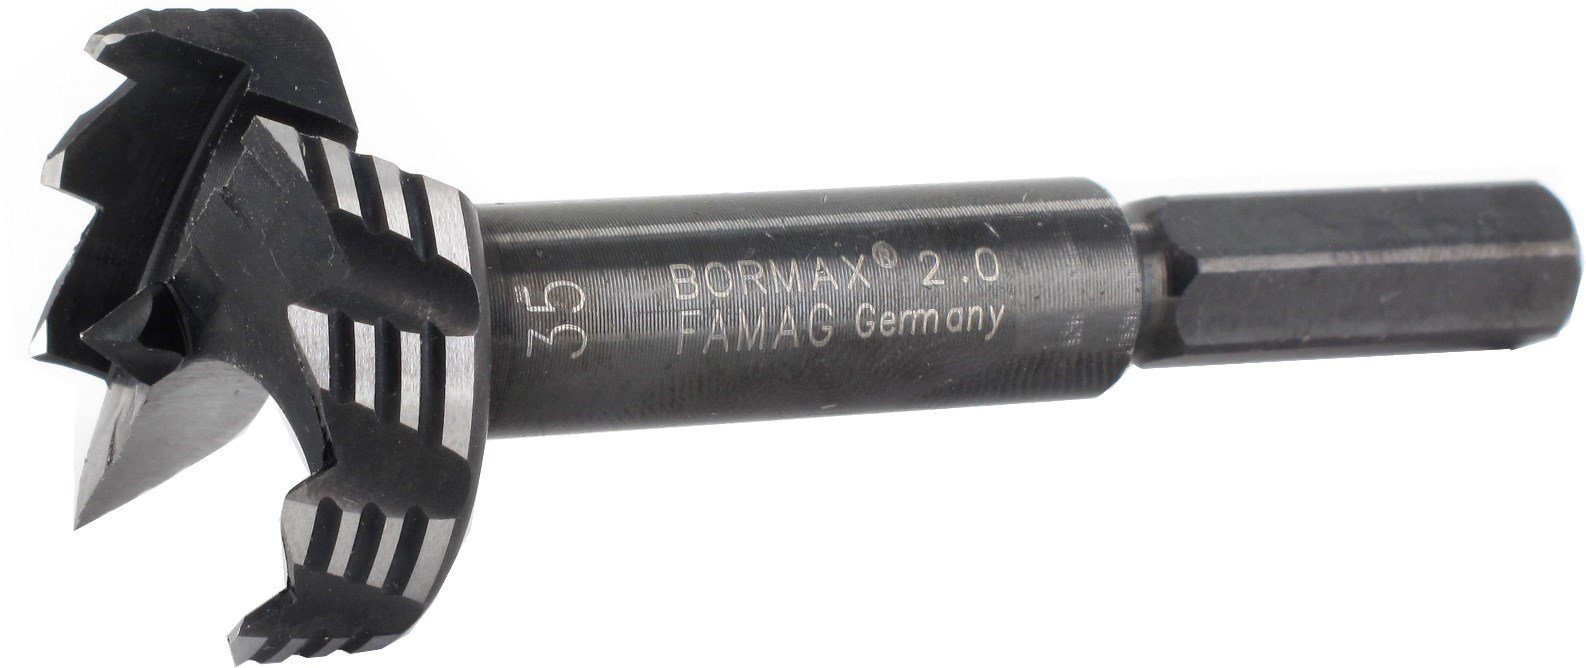 Bormax Holzbohrer FAMAG Famag 2.0 WS-Forstnerbohrersatz,15-tlg.